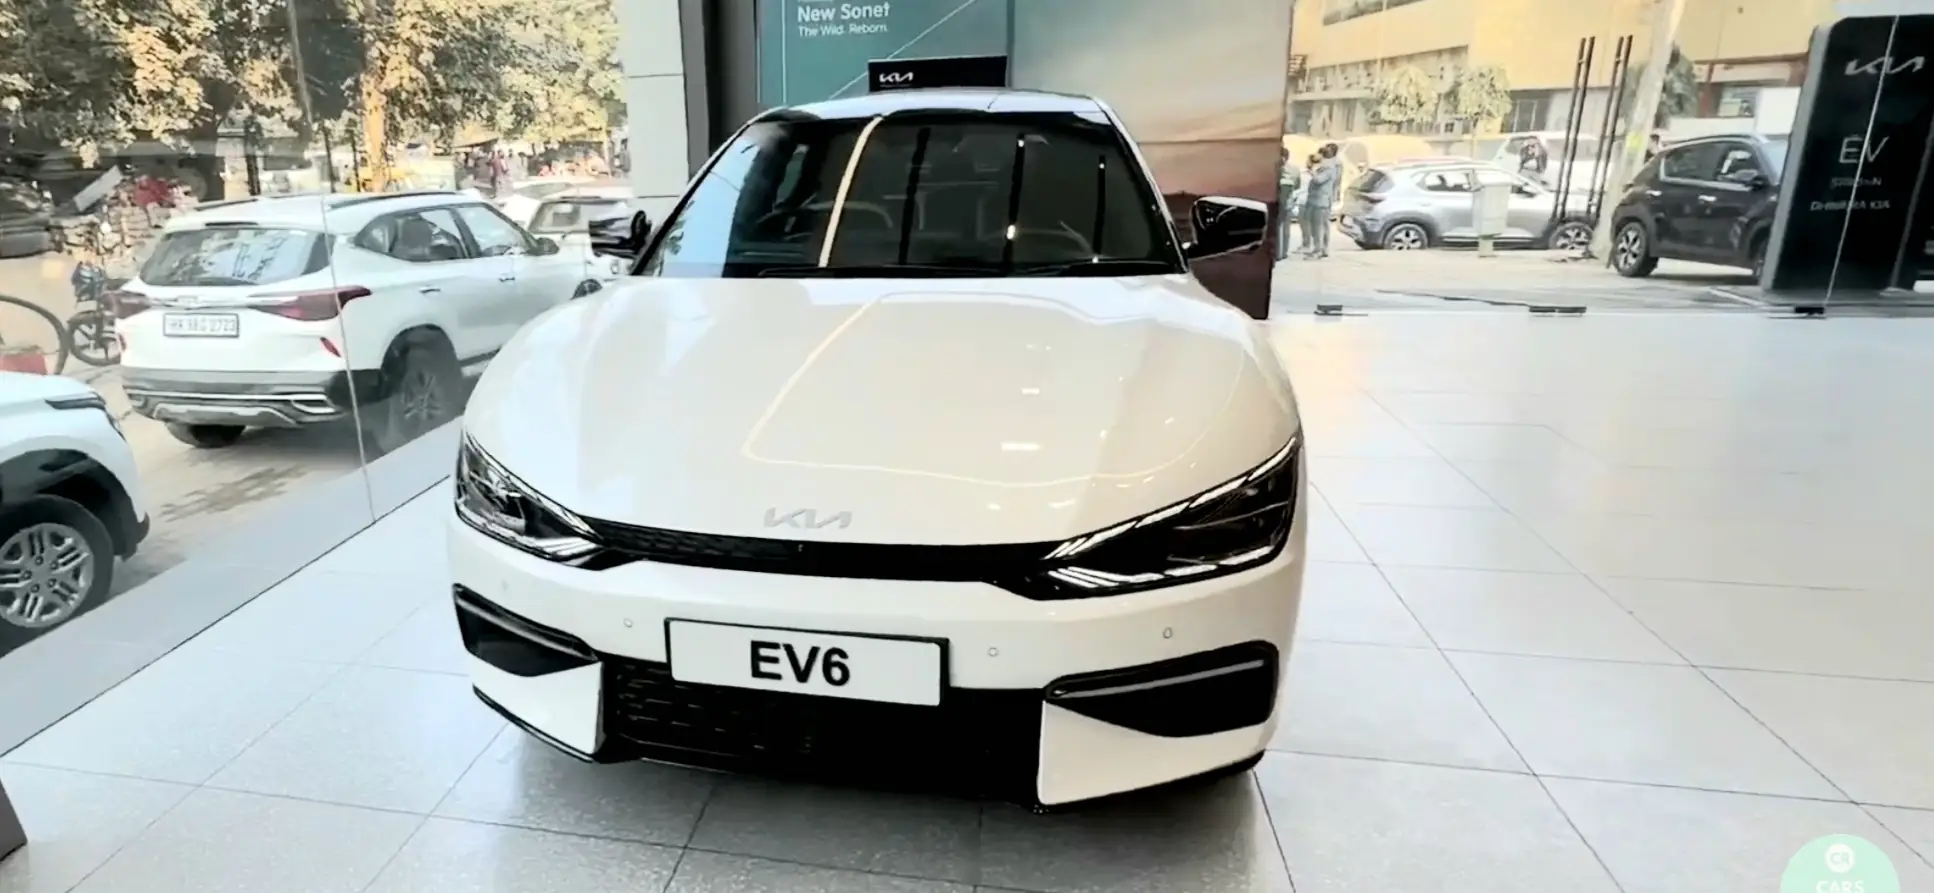 770km की रेंज के साथ मार्केट में तहलका मचाने आई Kia EV6 Electric Car, जानें फीचर्स और कीमत!